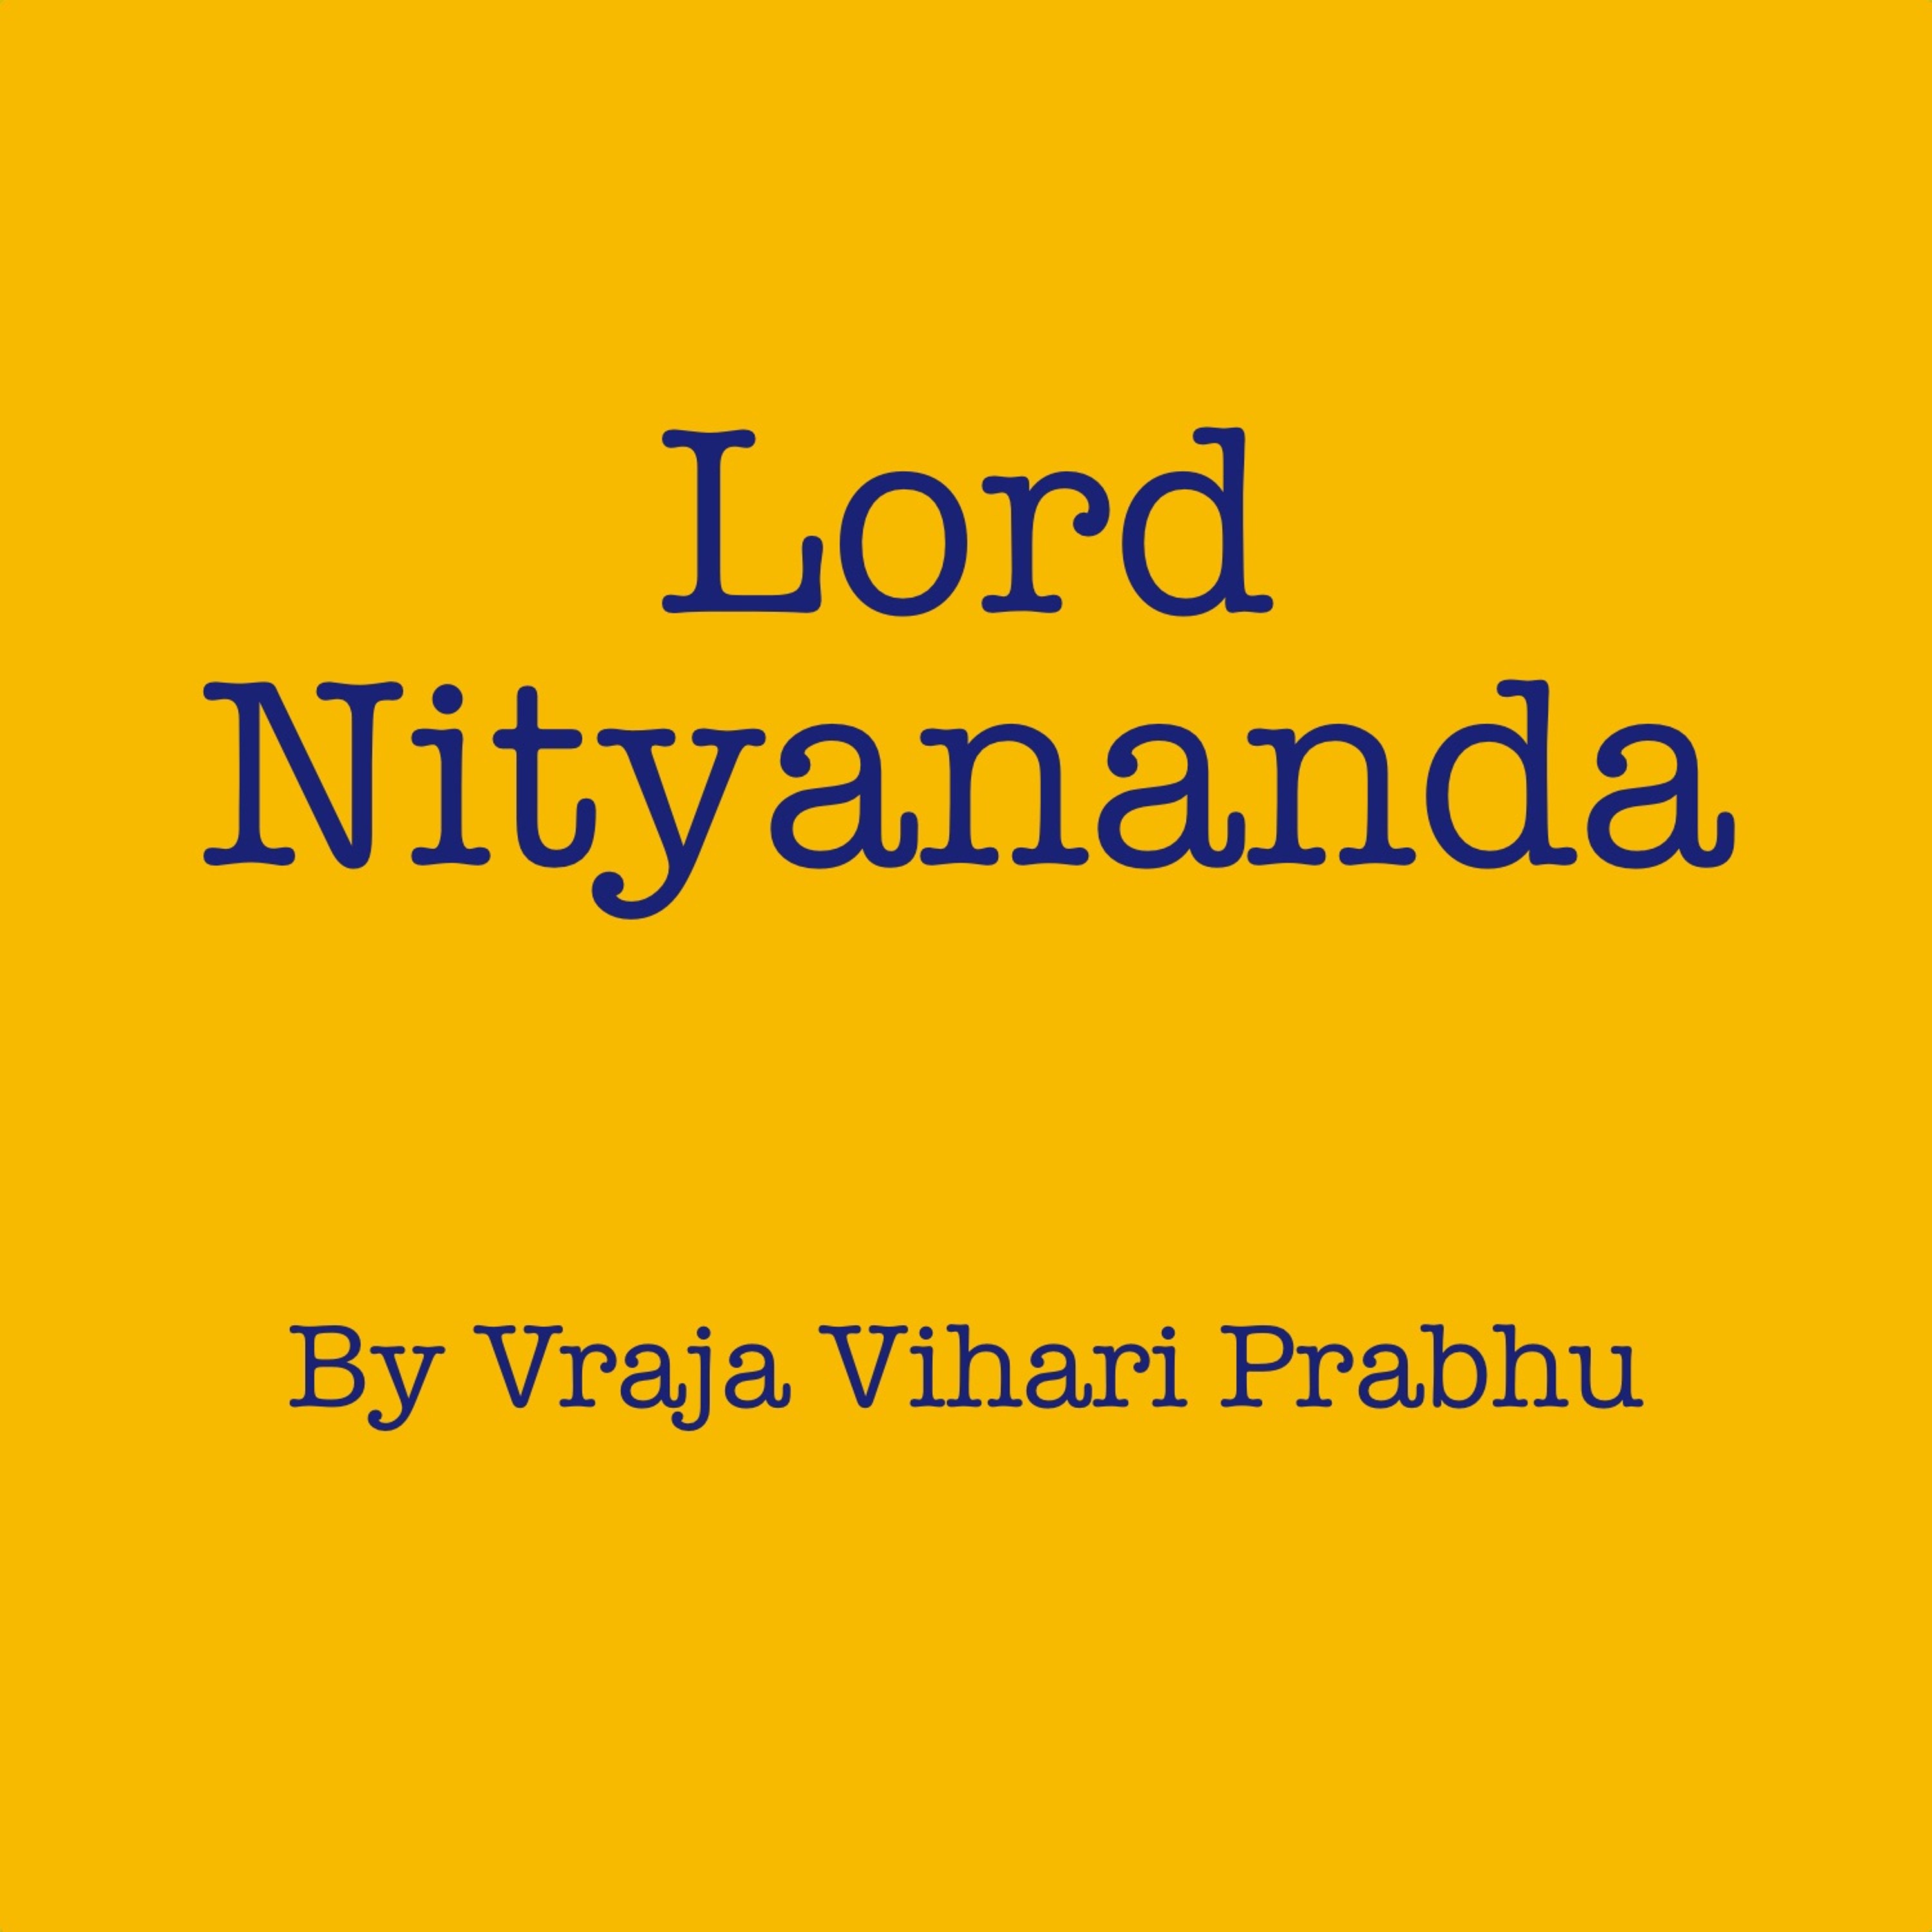 Lord Nityananda - by Vraja Vihari Prabhu